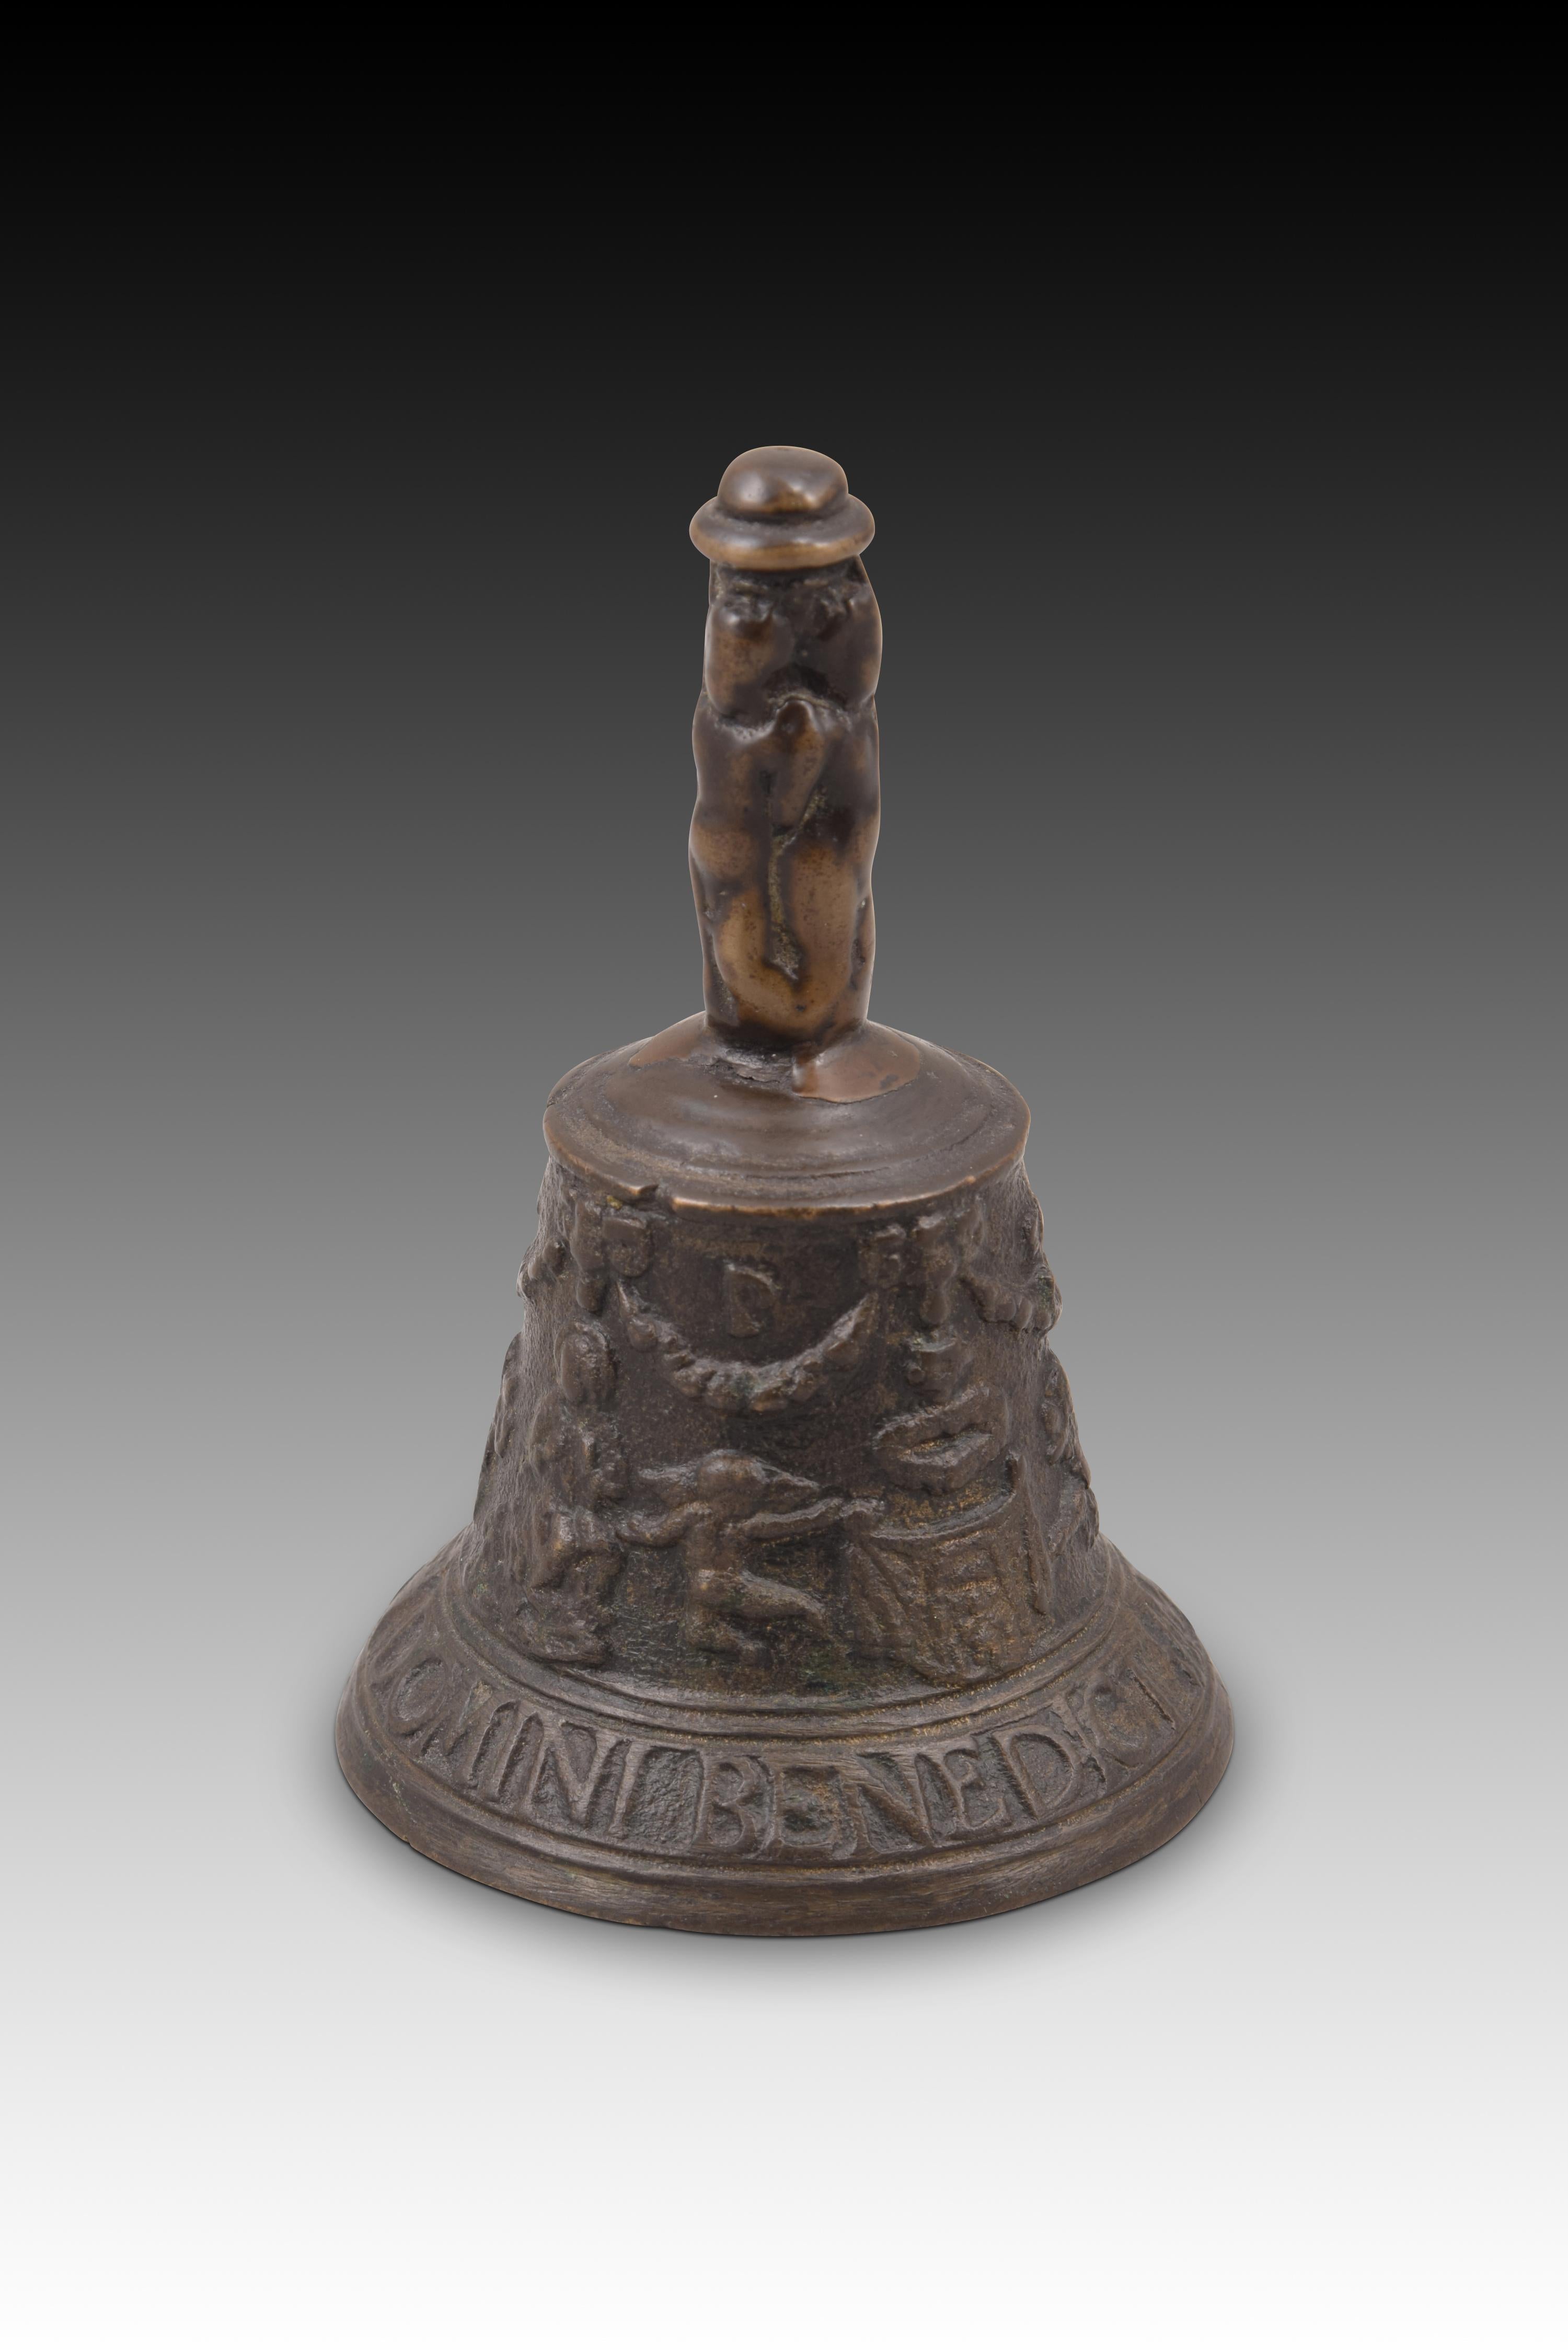 Renaissance Mechelen bell. Bronze. 16th century.